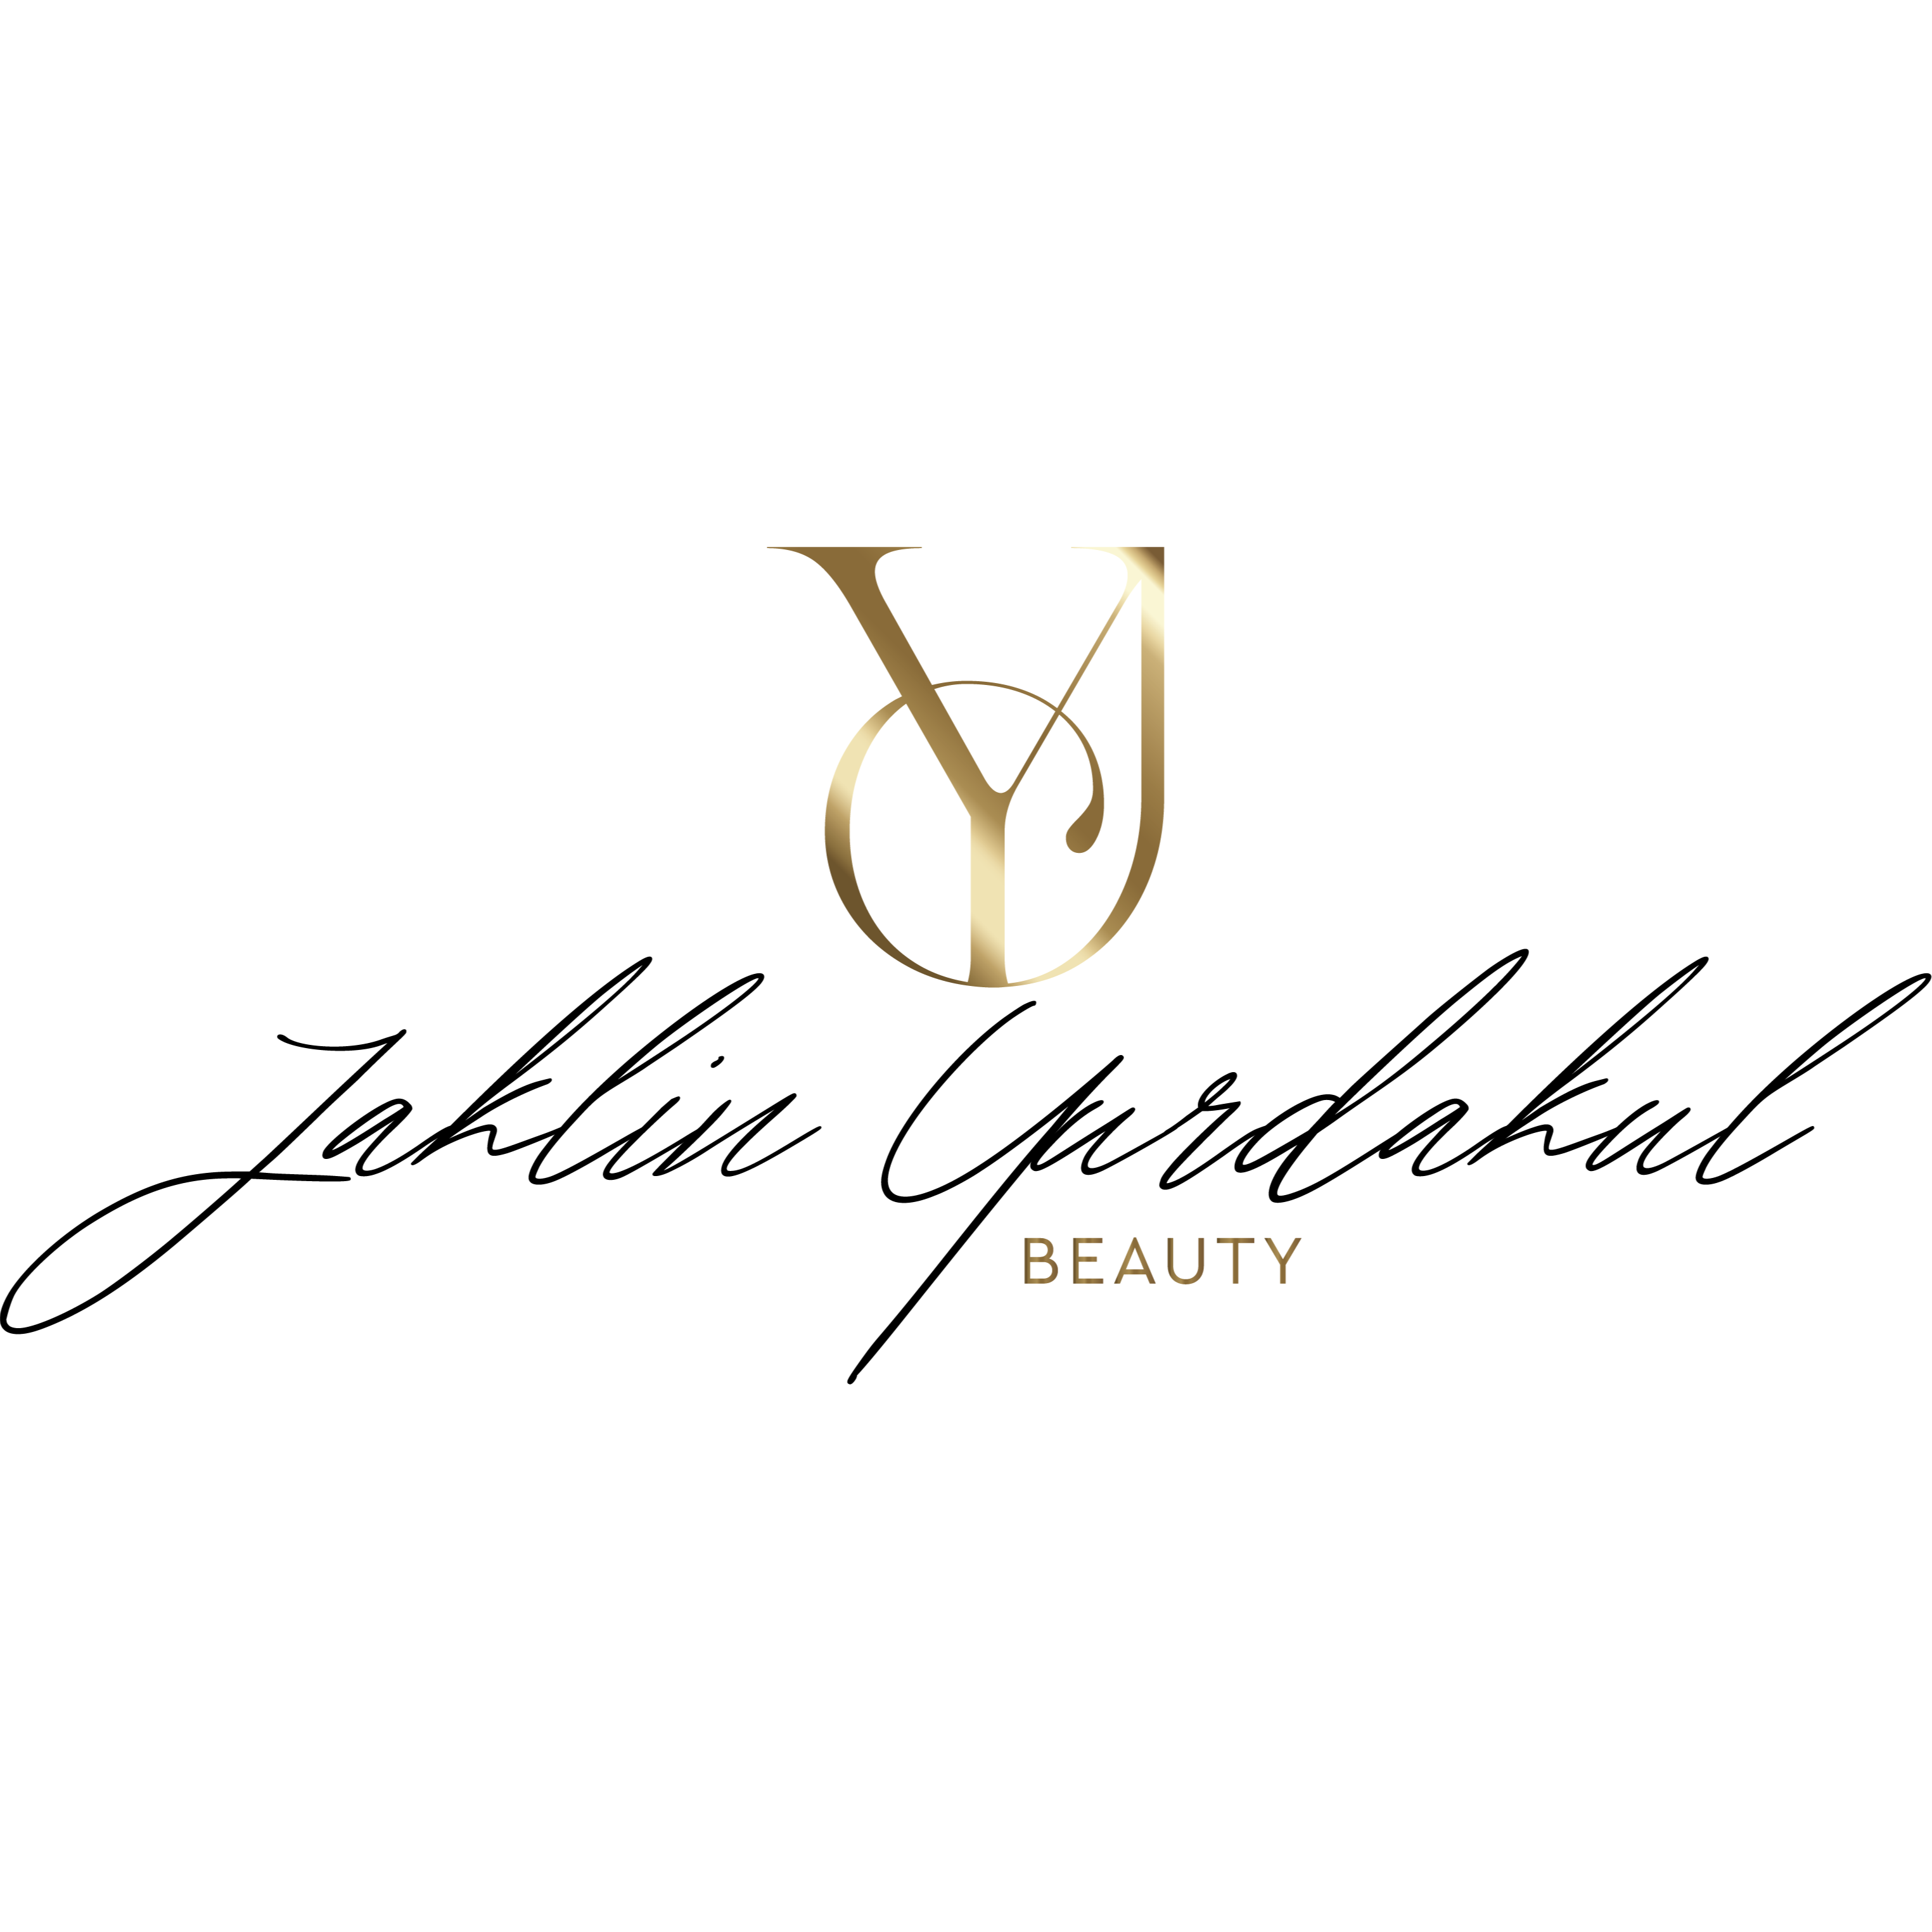 Jaklin Yurdakul Beauty in Bad Oeynhausen - Logo